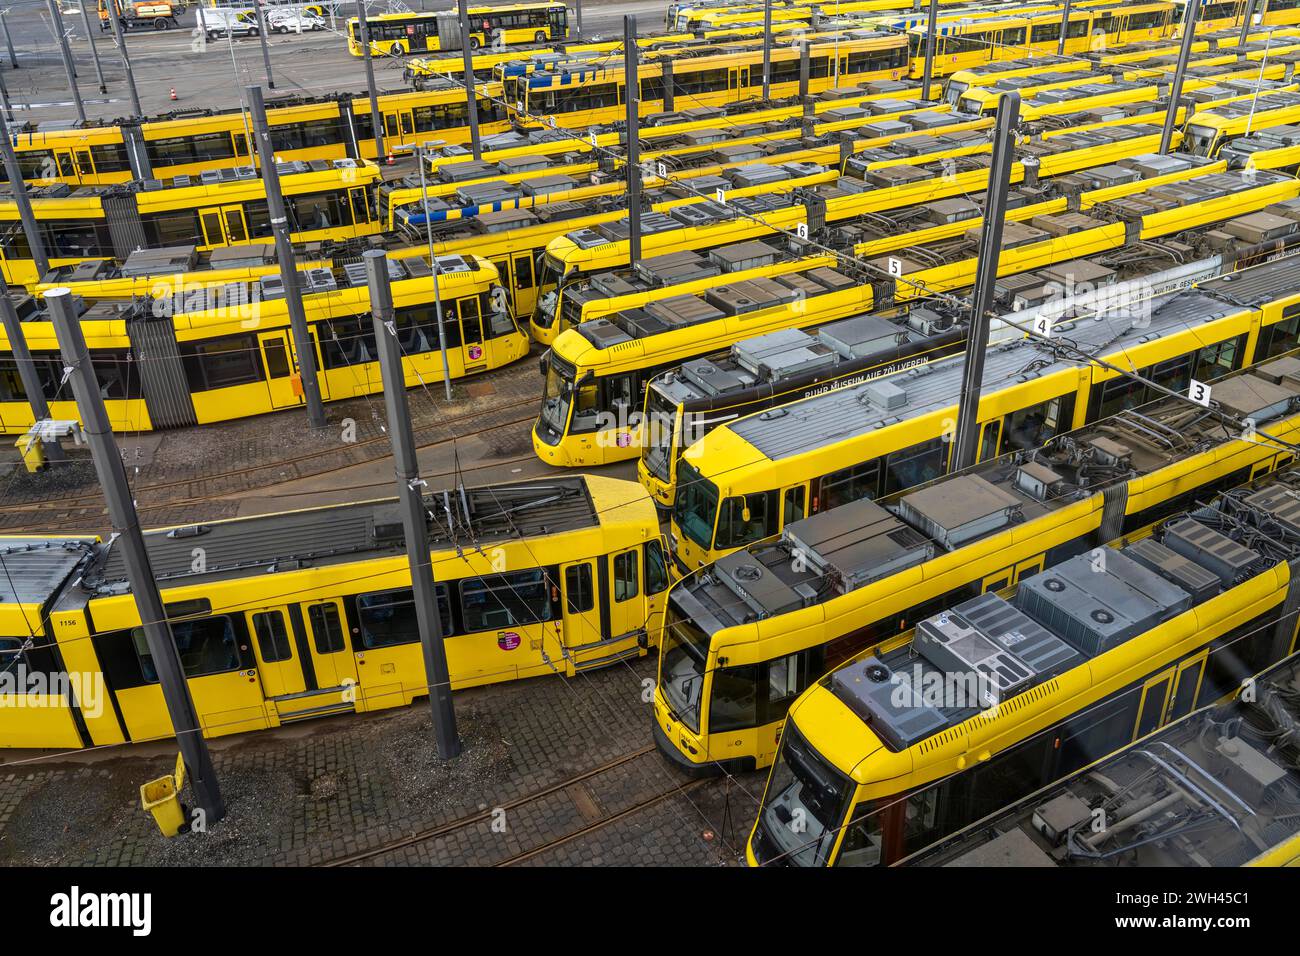 Grèves d'avertissement dans les transports publics locaux, tramways Ruhrbahn au dépôt, syndicalistes VERDI en grève, pas de trains en circulation, Essen, NRW, Allemagne Banque D'Images